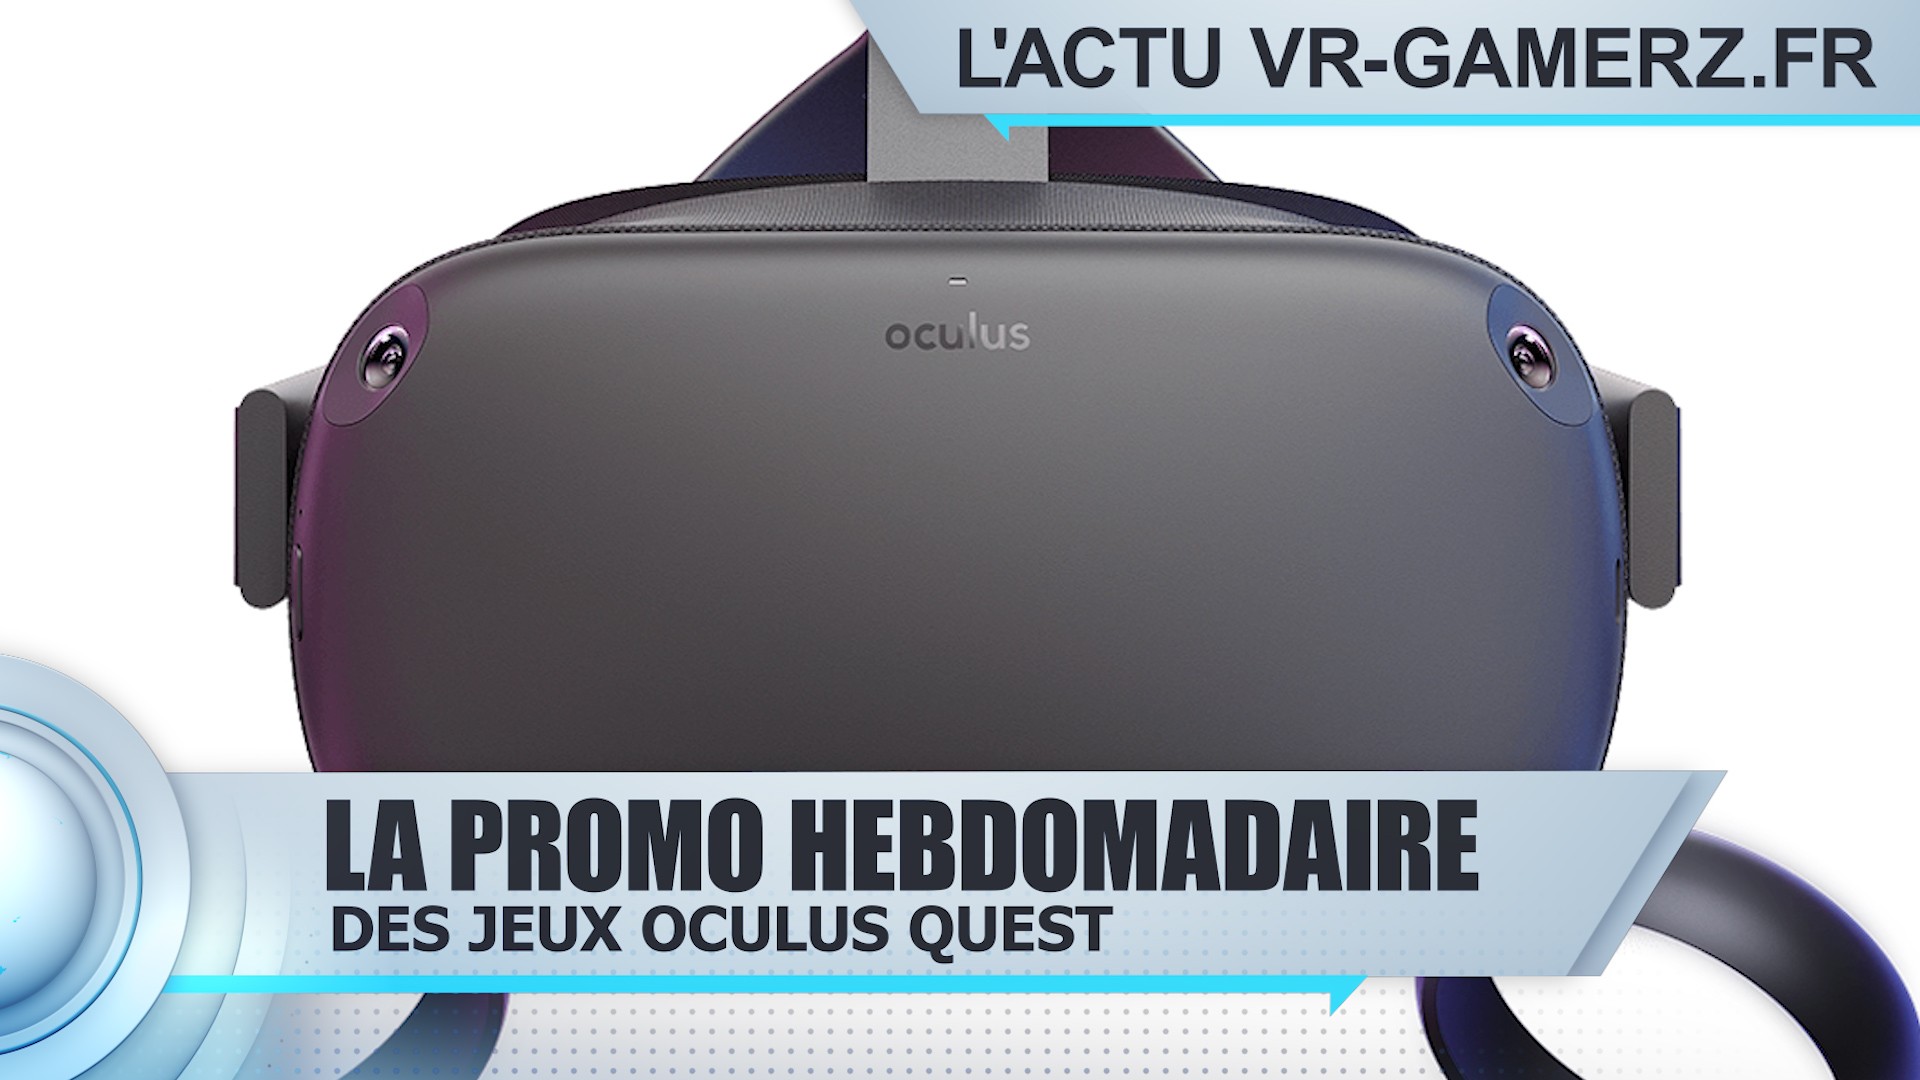 Les promotions de l’Oculus quest